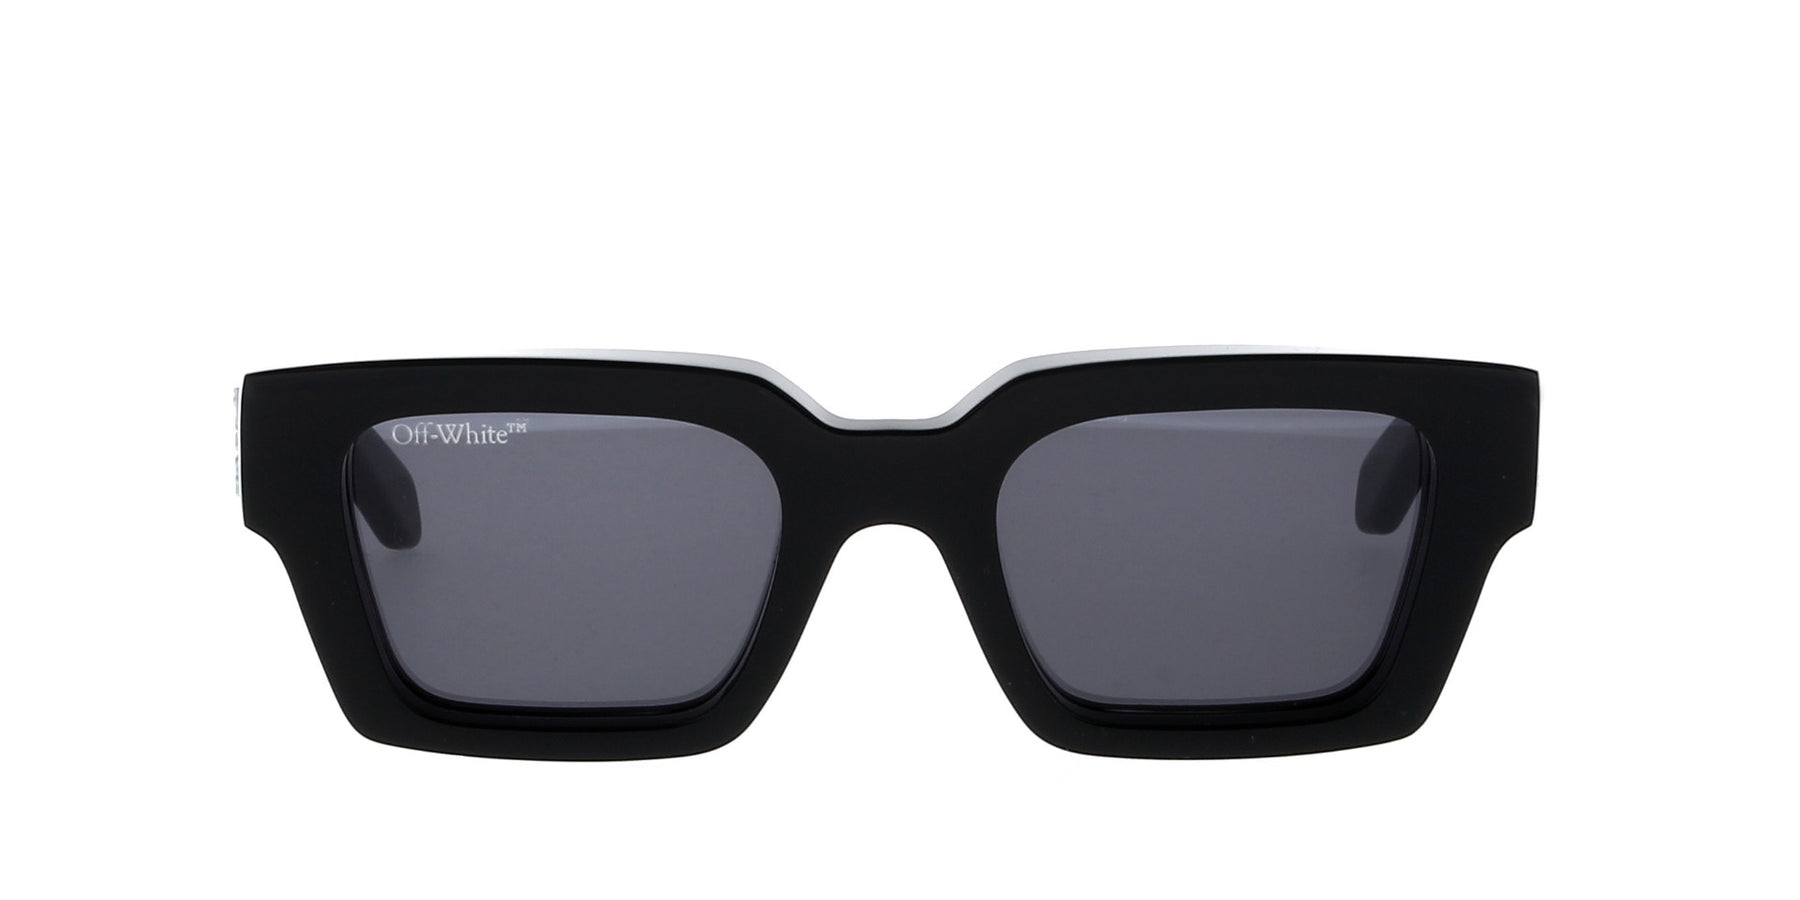 Off-White Virgil Sunglasses OERI008C99PLA0021018 Black Frame